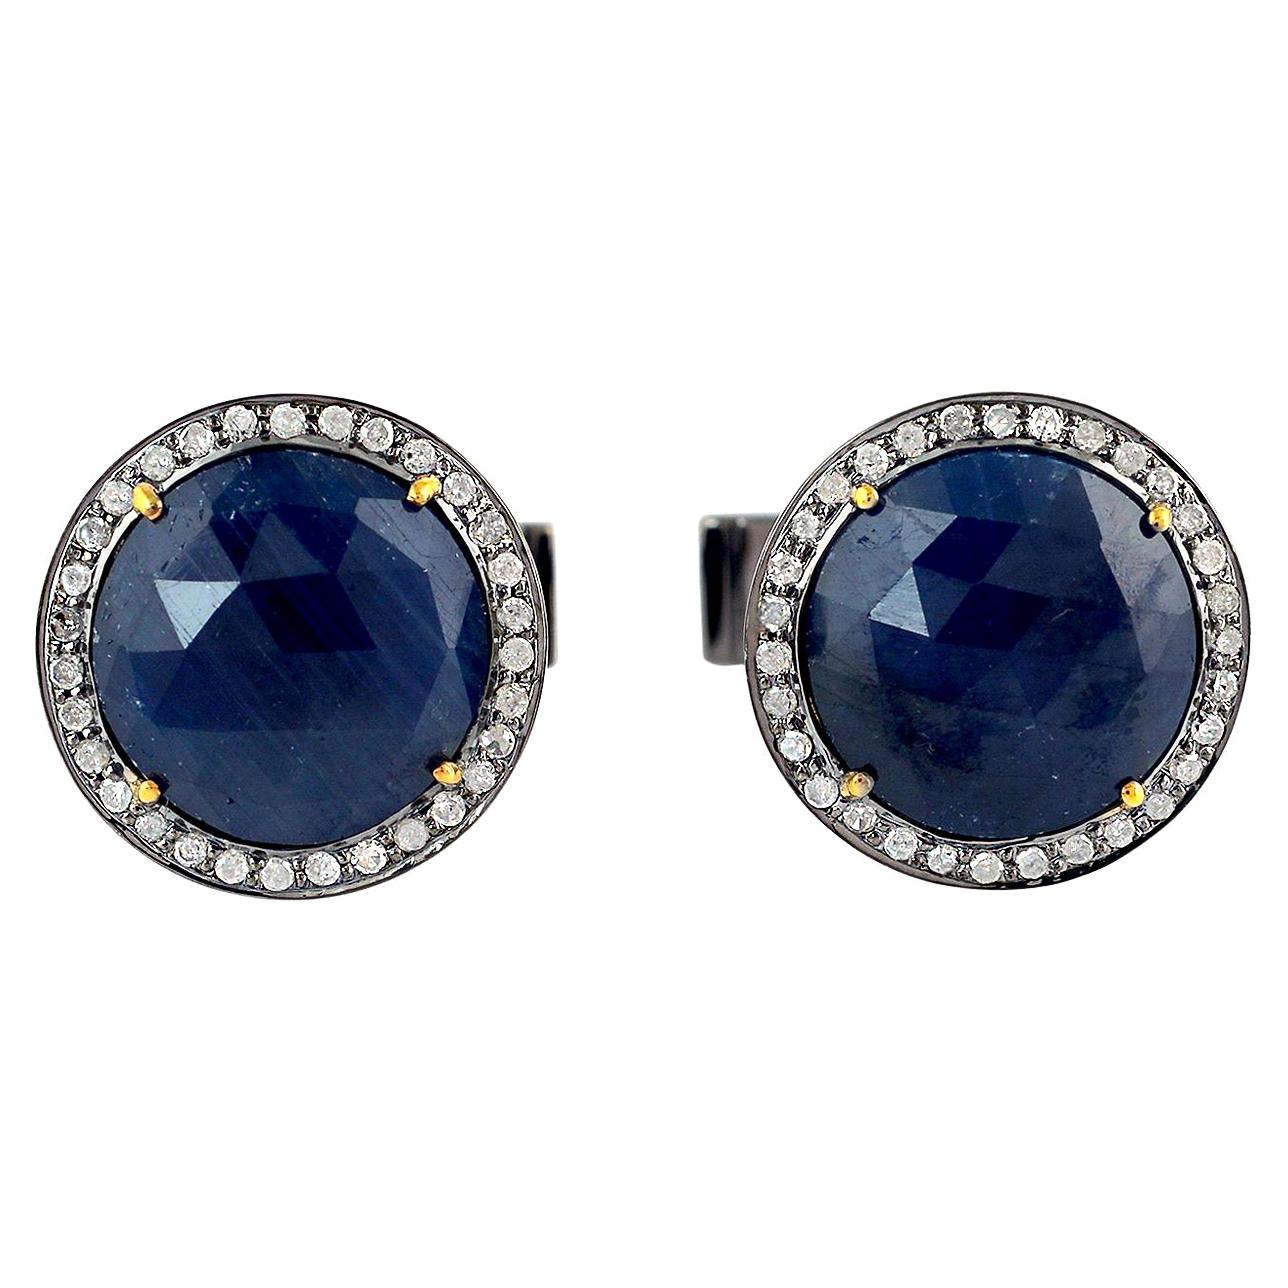 Manschettenknöpfe mit 12,34 Karat blauem Saphir und Diamant